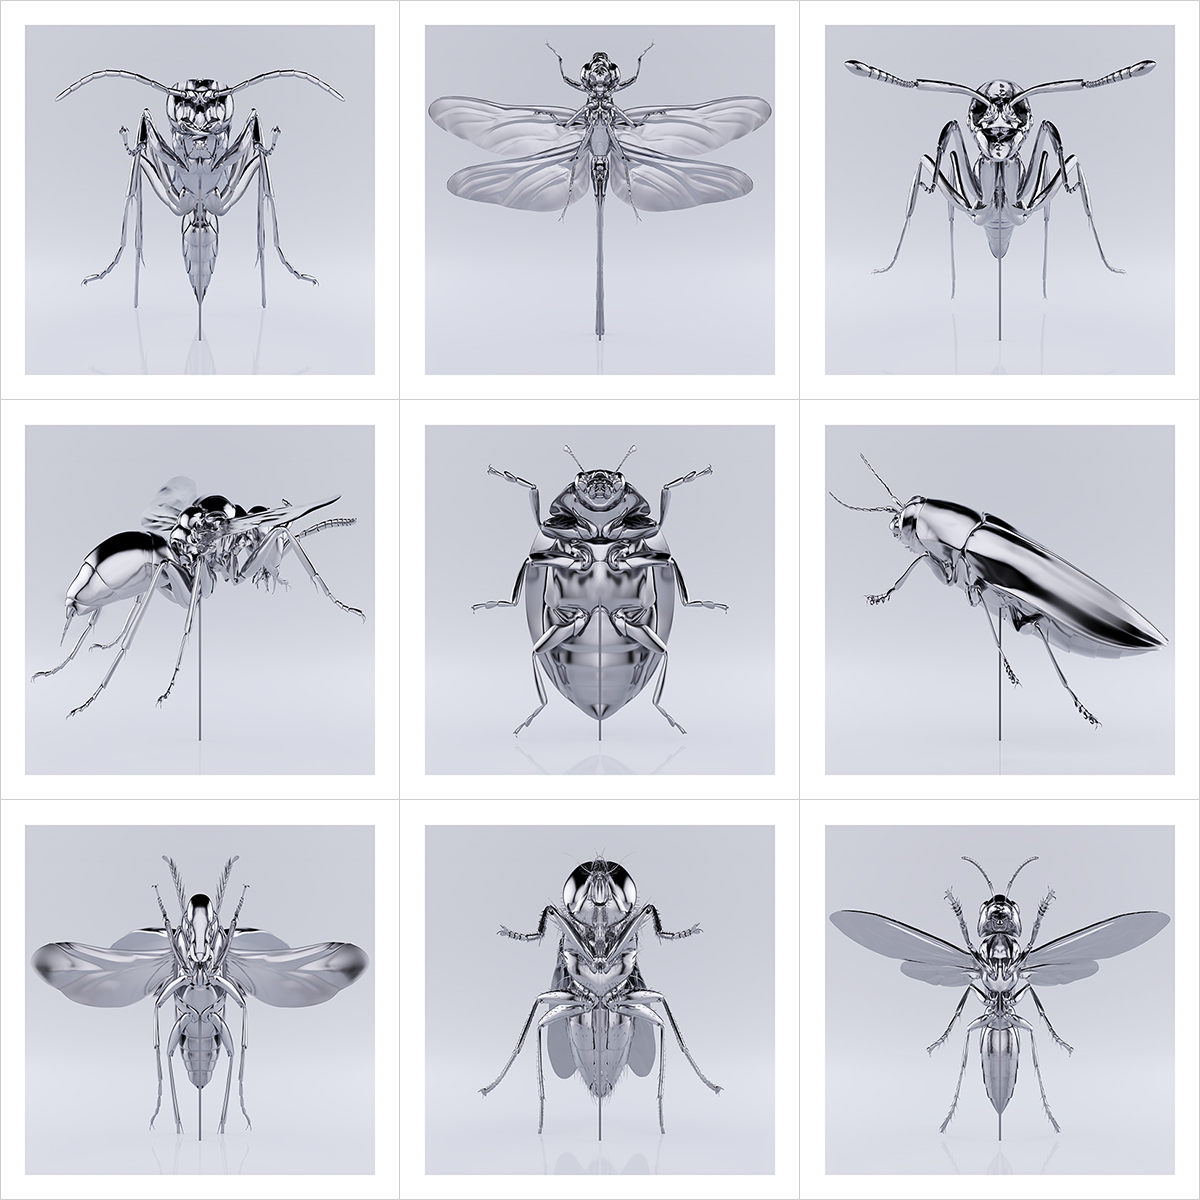 These were the Insects 000 1 - 2020 - These were the Insects